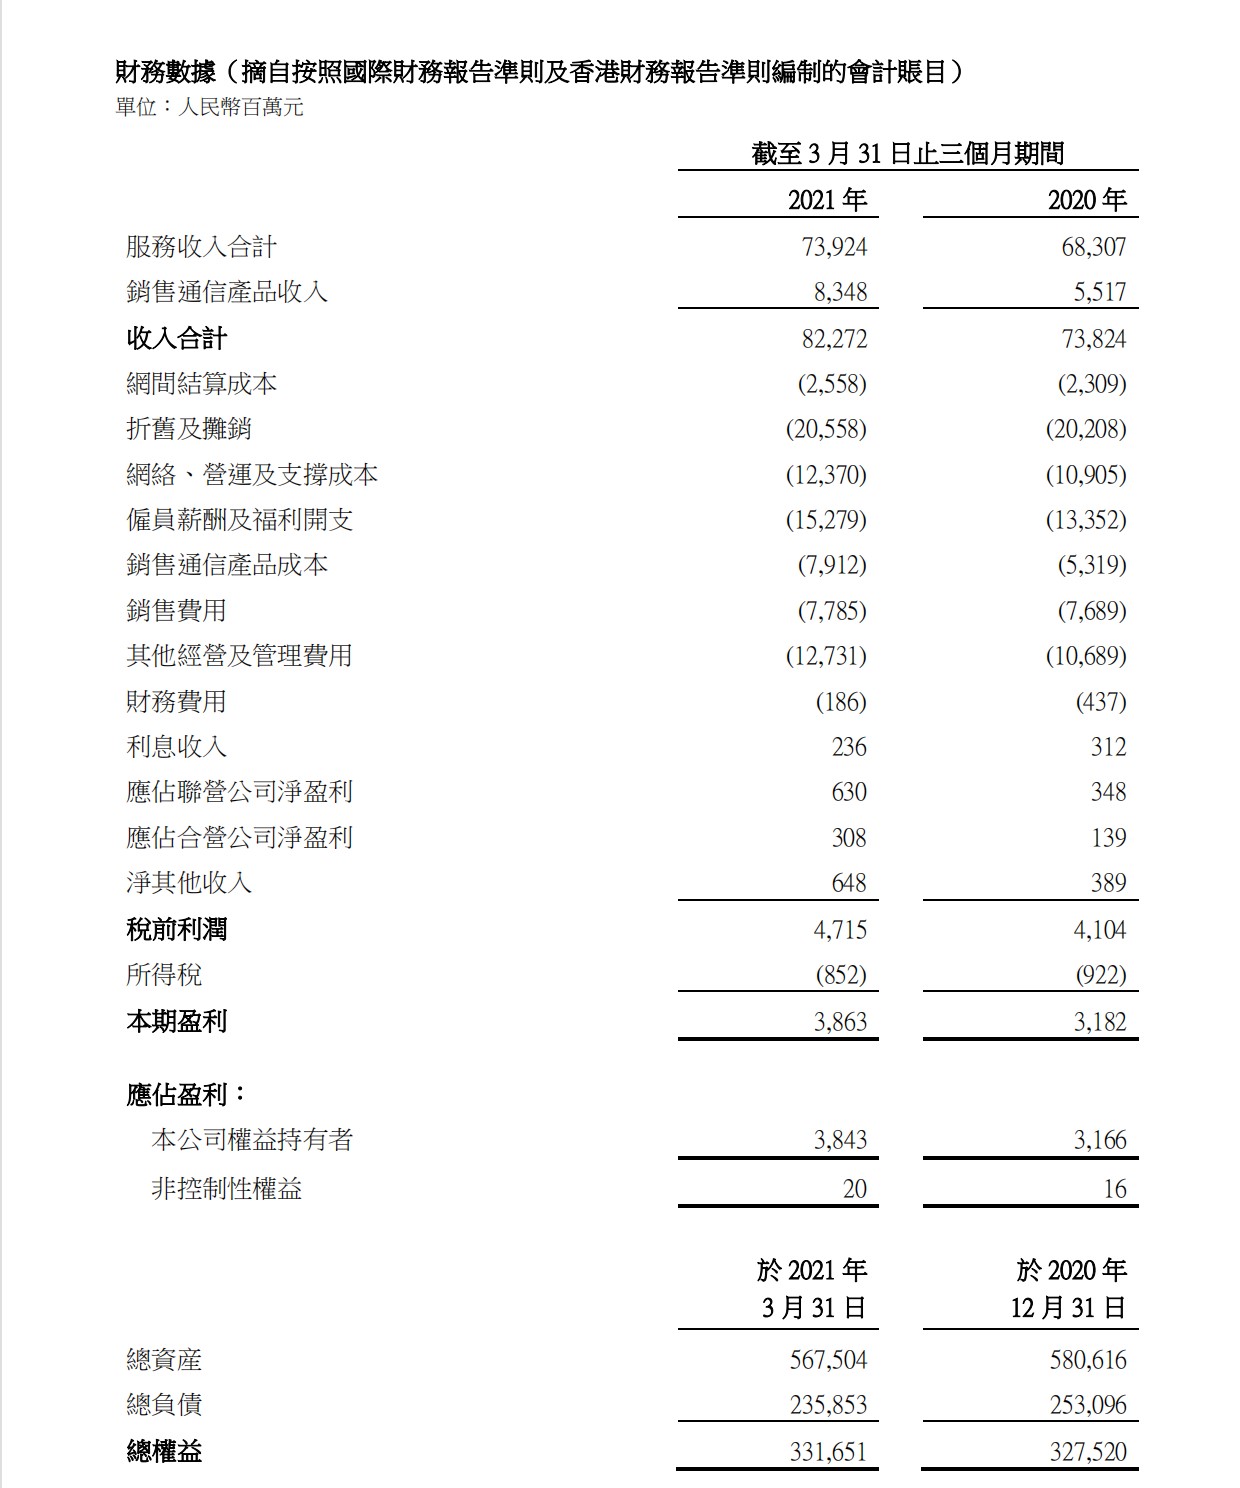 中国联通一季度净利润38.43亿元 同比增长21.4%